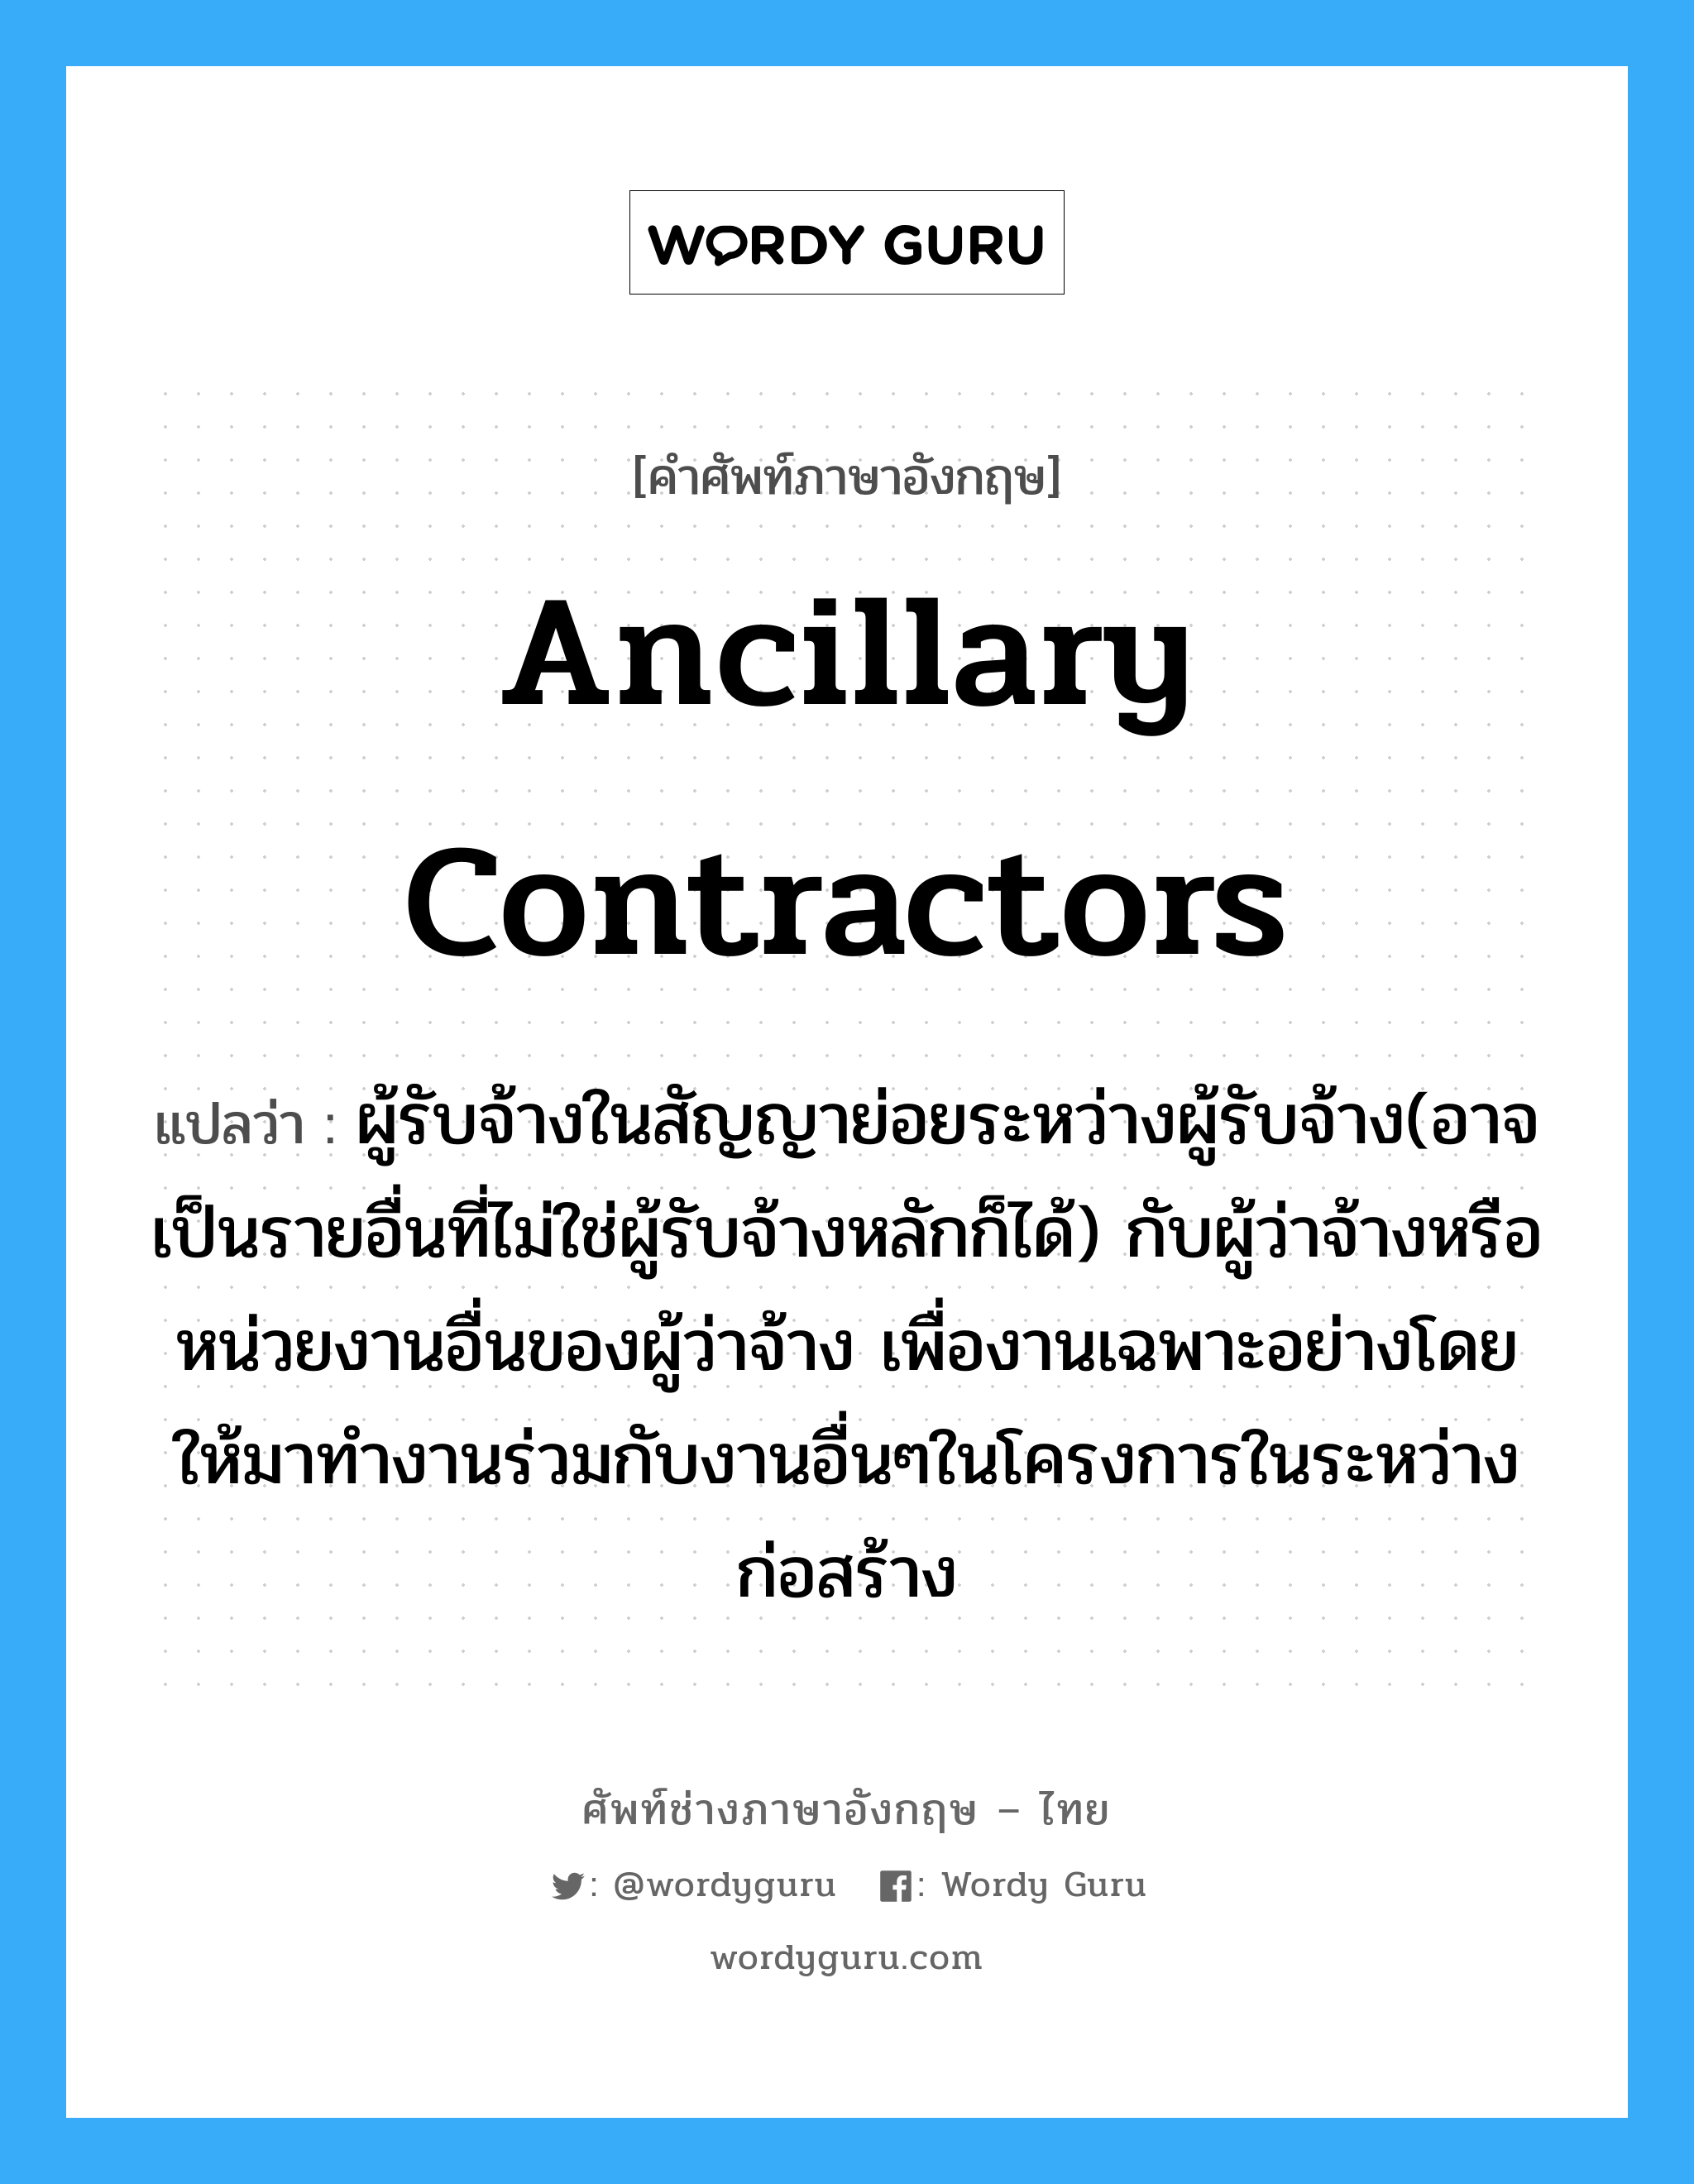 Ancillary Contractors แปลว่า?, คำศัพท์ช่างภาษาอังกฤษ - ไทย Ancillary Contractors คำศัพท์ภาษาอังกฤษ Ancillary Contractors แปลว่า ผู้รับจ้างในสัญญาย่อยระหว่างผู้รับจ้าง(อาจเป็นรายอื่นที่ไม่ใช่ผู้รับจ้างหลักก็ได้) กับผู้ว่าจ้างหรือหน่วยงานอื่นของผู้ว่าจ้าง เพื่องานเฉพาะอย่างโดยให้มาทำงานร่วมกับงานอื่นๆในโครงการในระหว่างก่อสร้าง